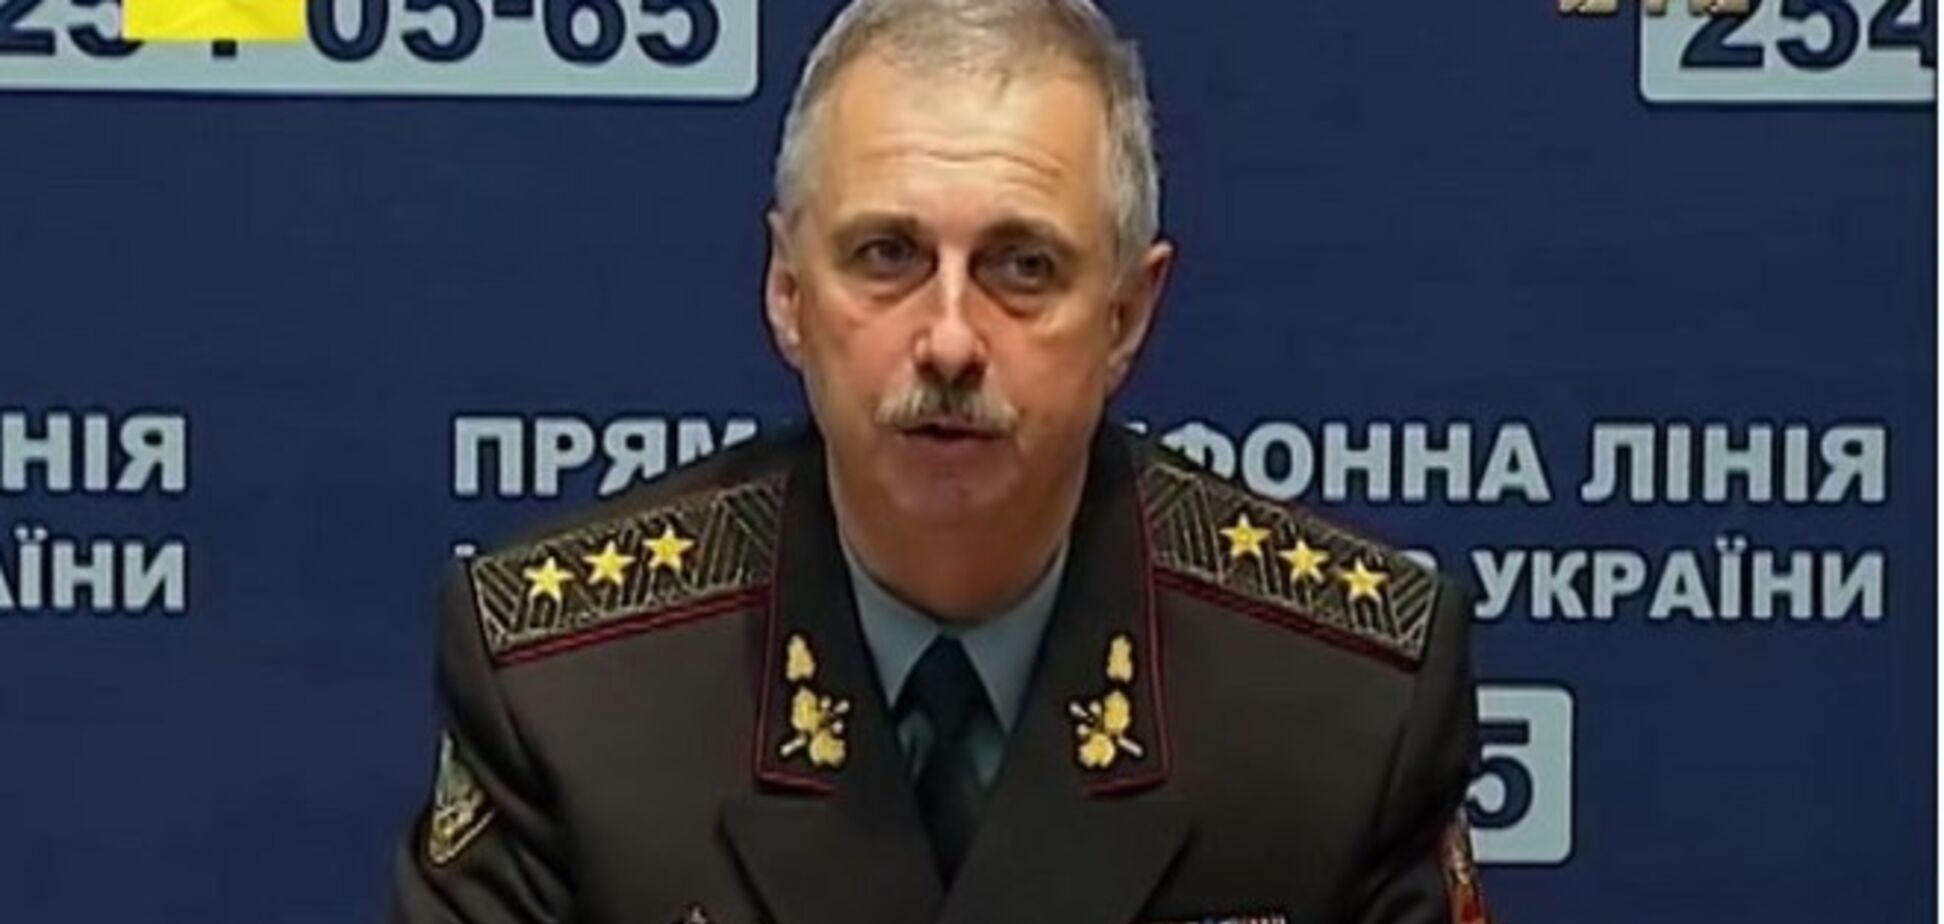 В українській армії з'явиться четвертий вид Збройних сил